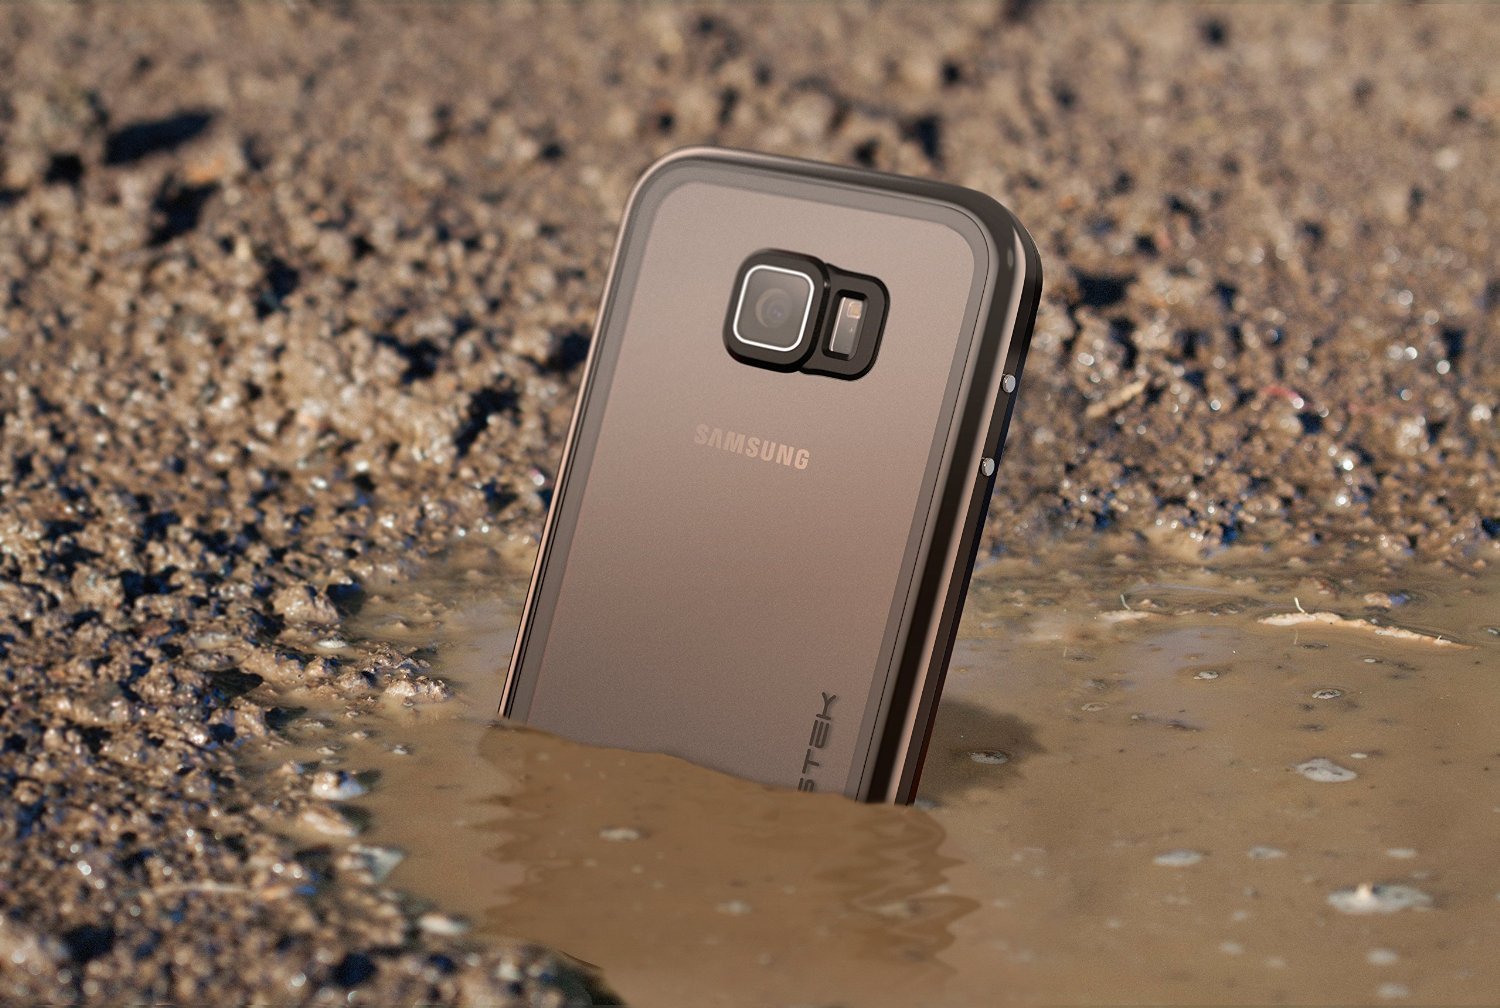 Galaxy S6 Waterproof Case, Ghostek Atomic 2.0 Gold  Water/Shock/Dirt/Snow Proof | Lifetime Warranty